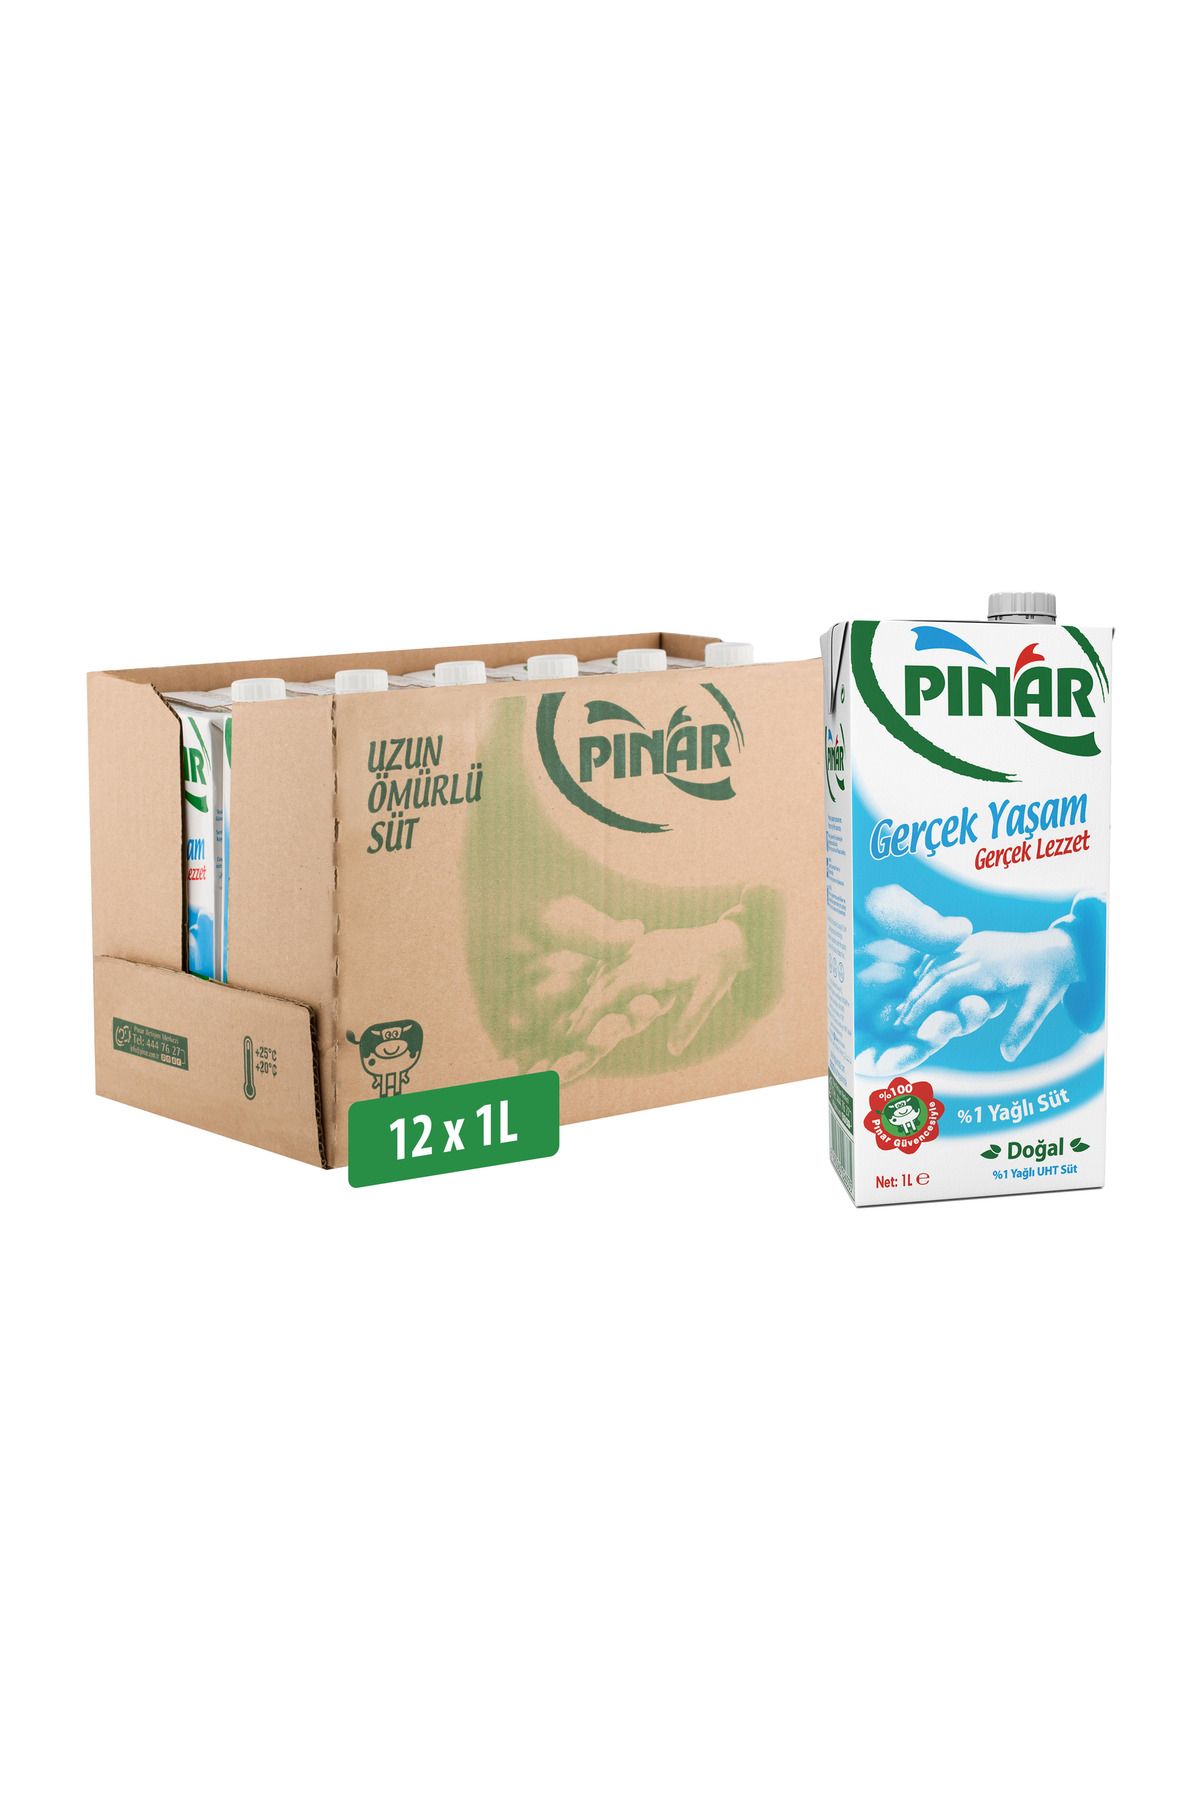 Pınar %1 Yağlı Süt 1 L x 12 Adet